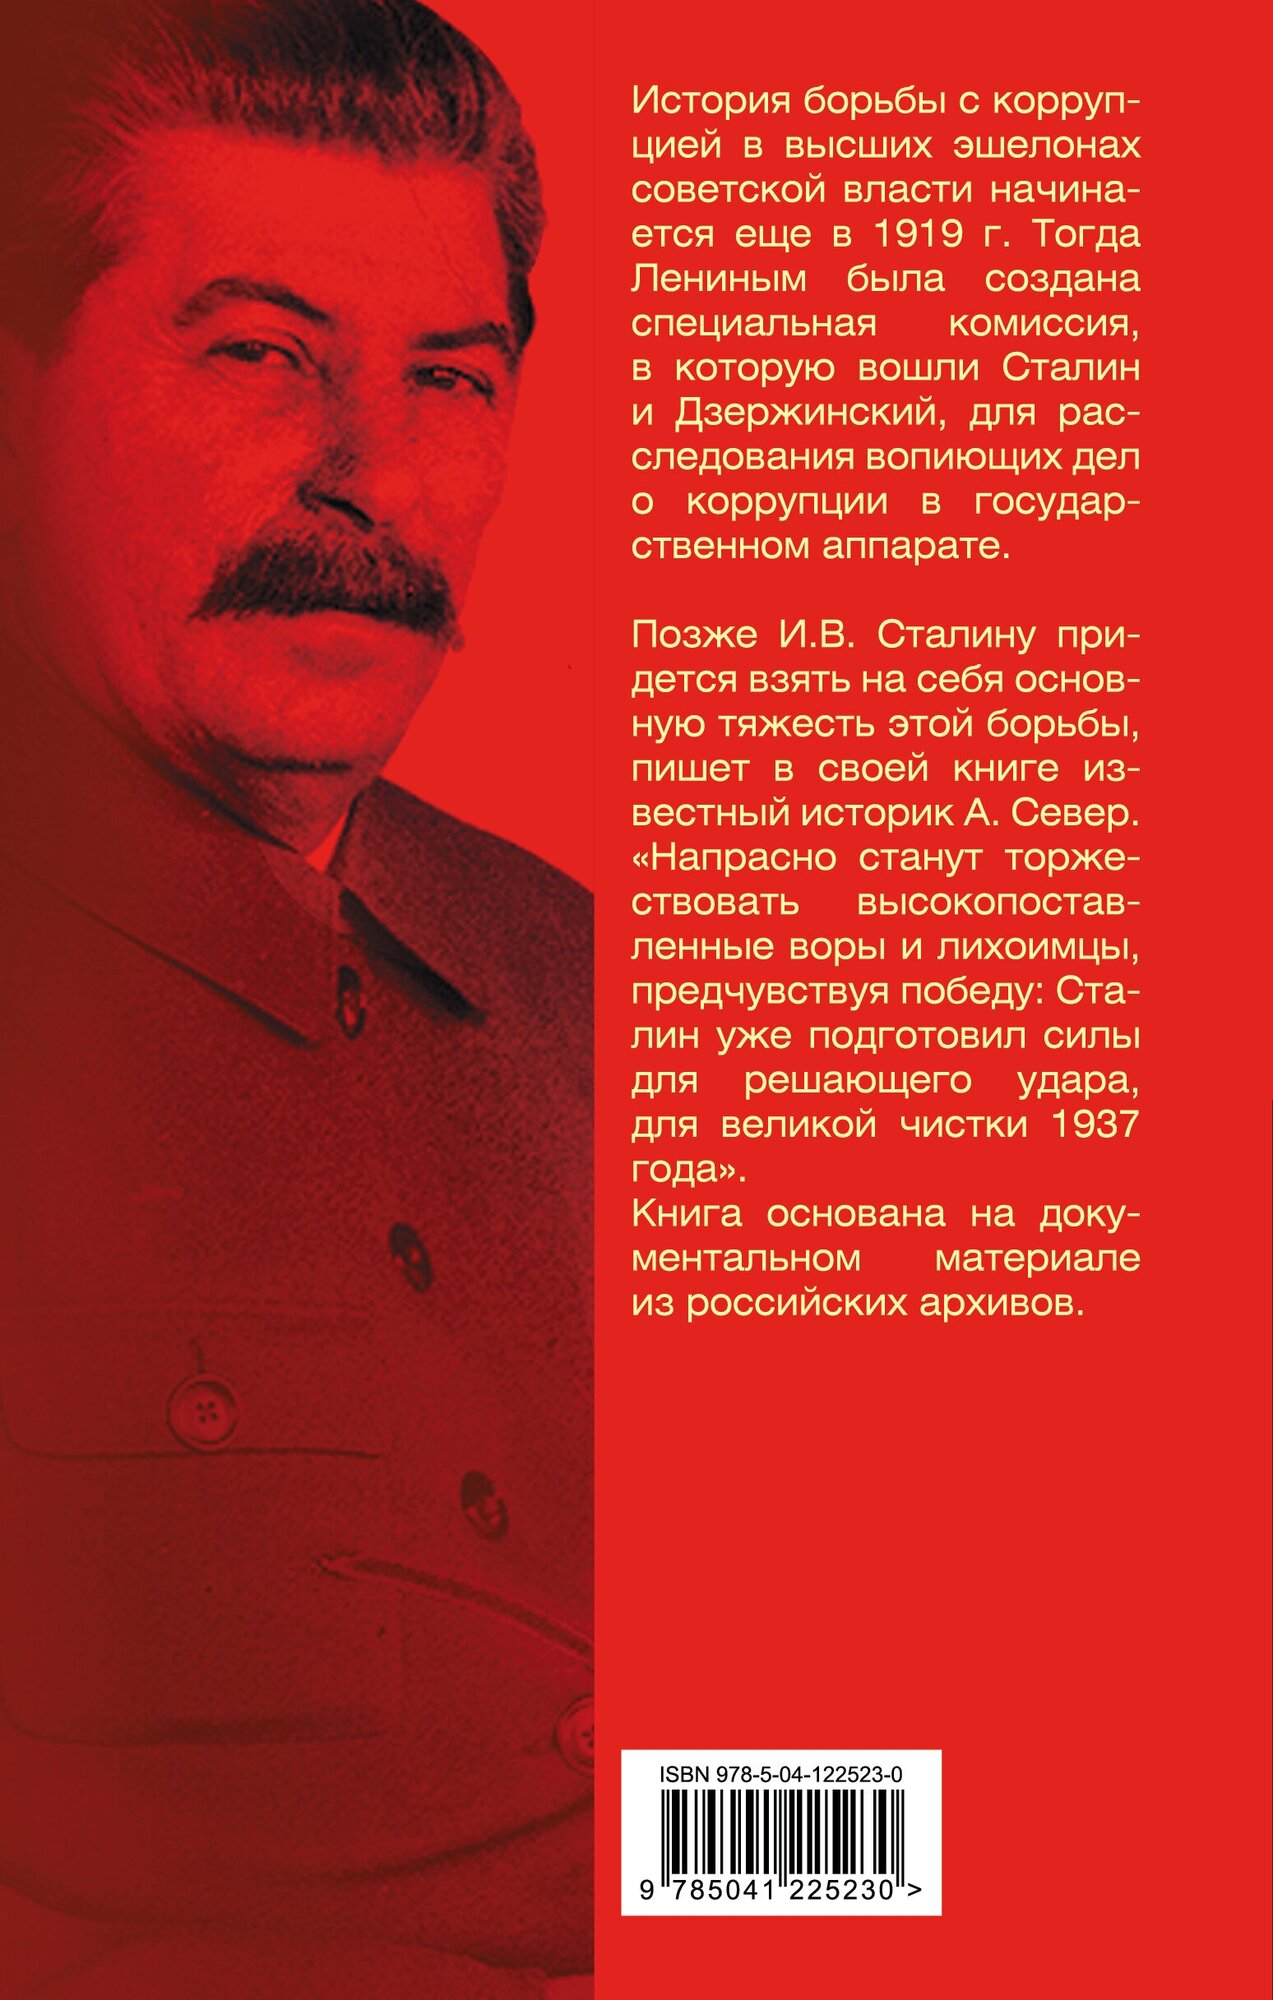 Порядок был. Антикоррупционный комитет Сталина - фото №7